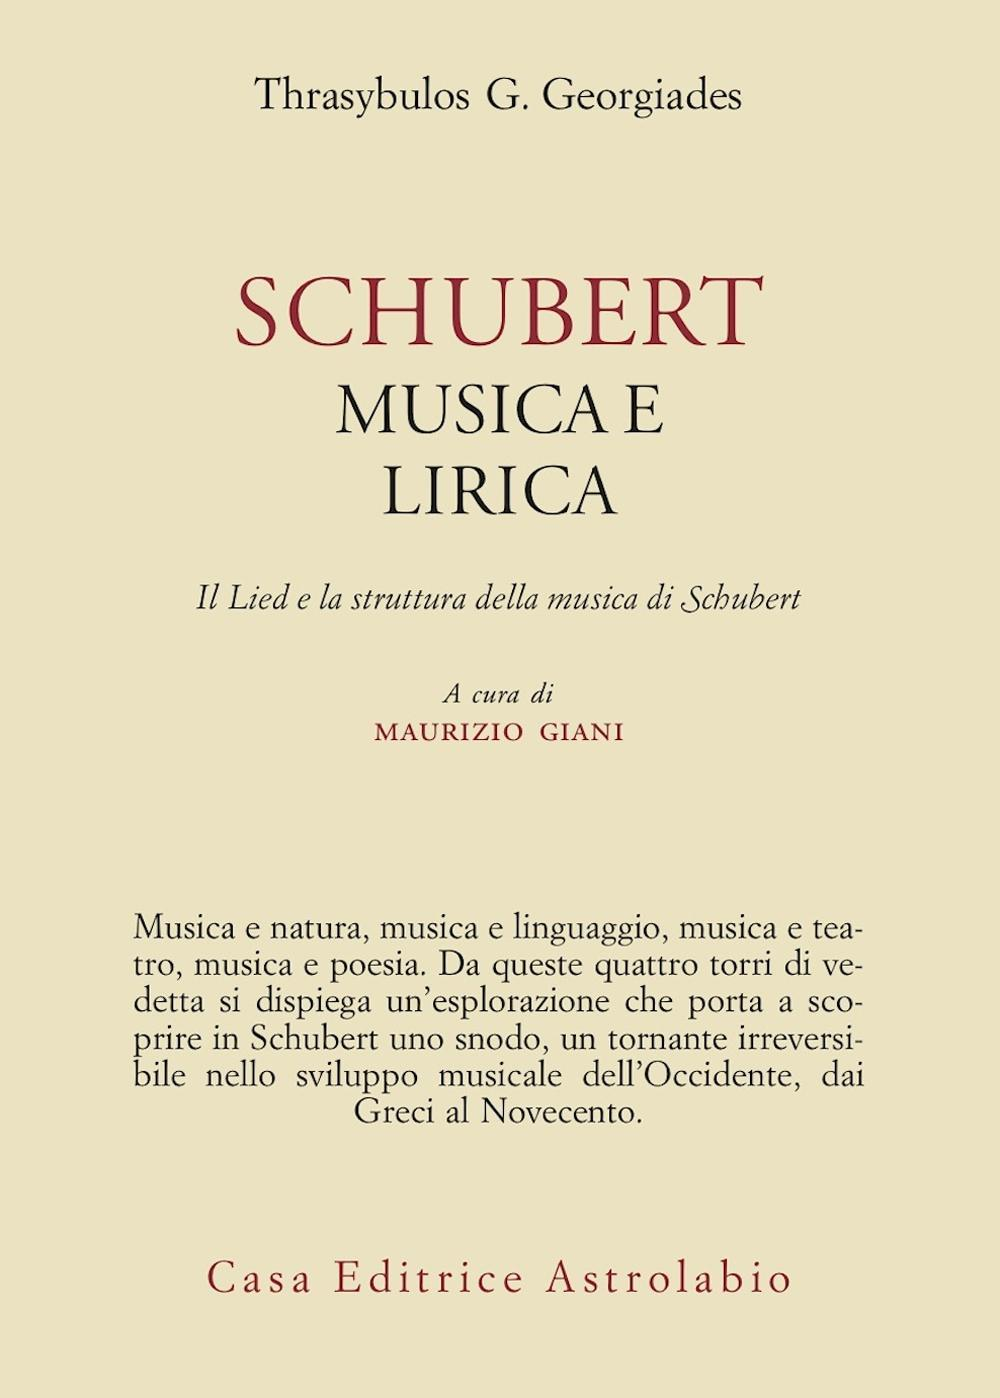 Image of Schubert. Musica e lirica. Il Lied e la struttura della musica di Schubert